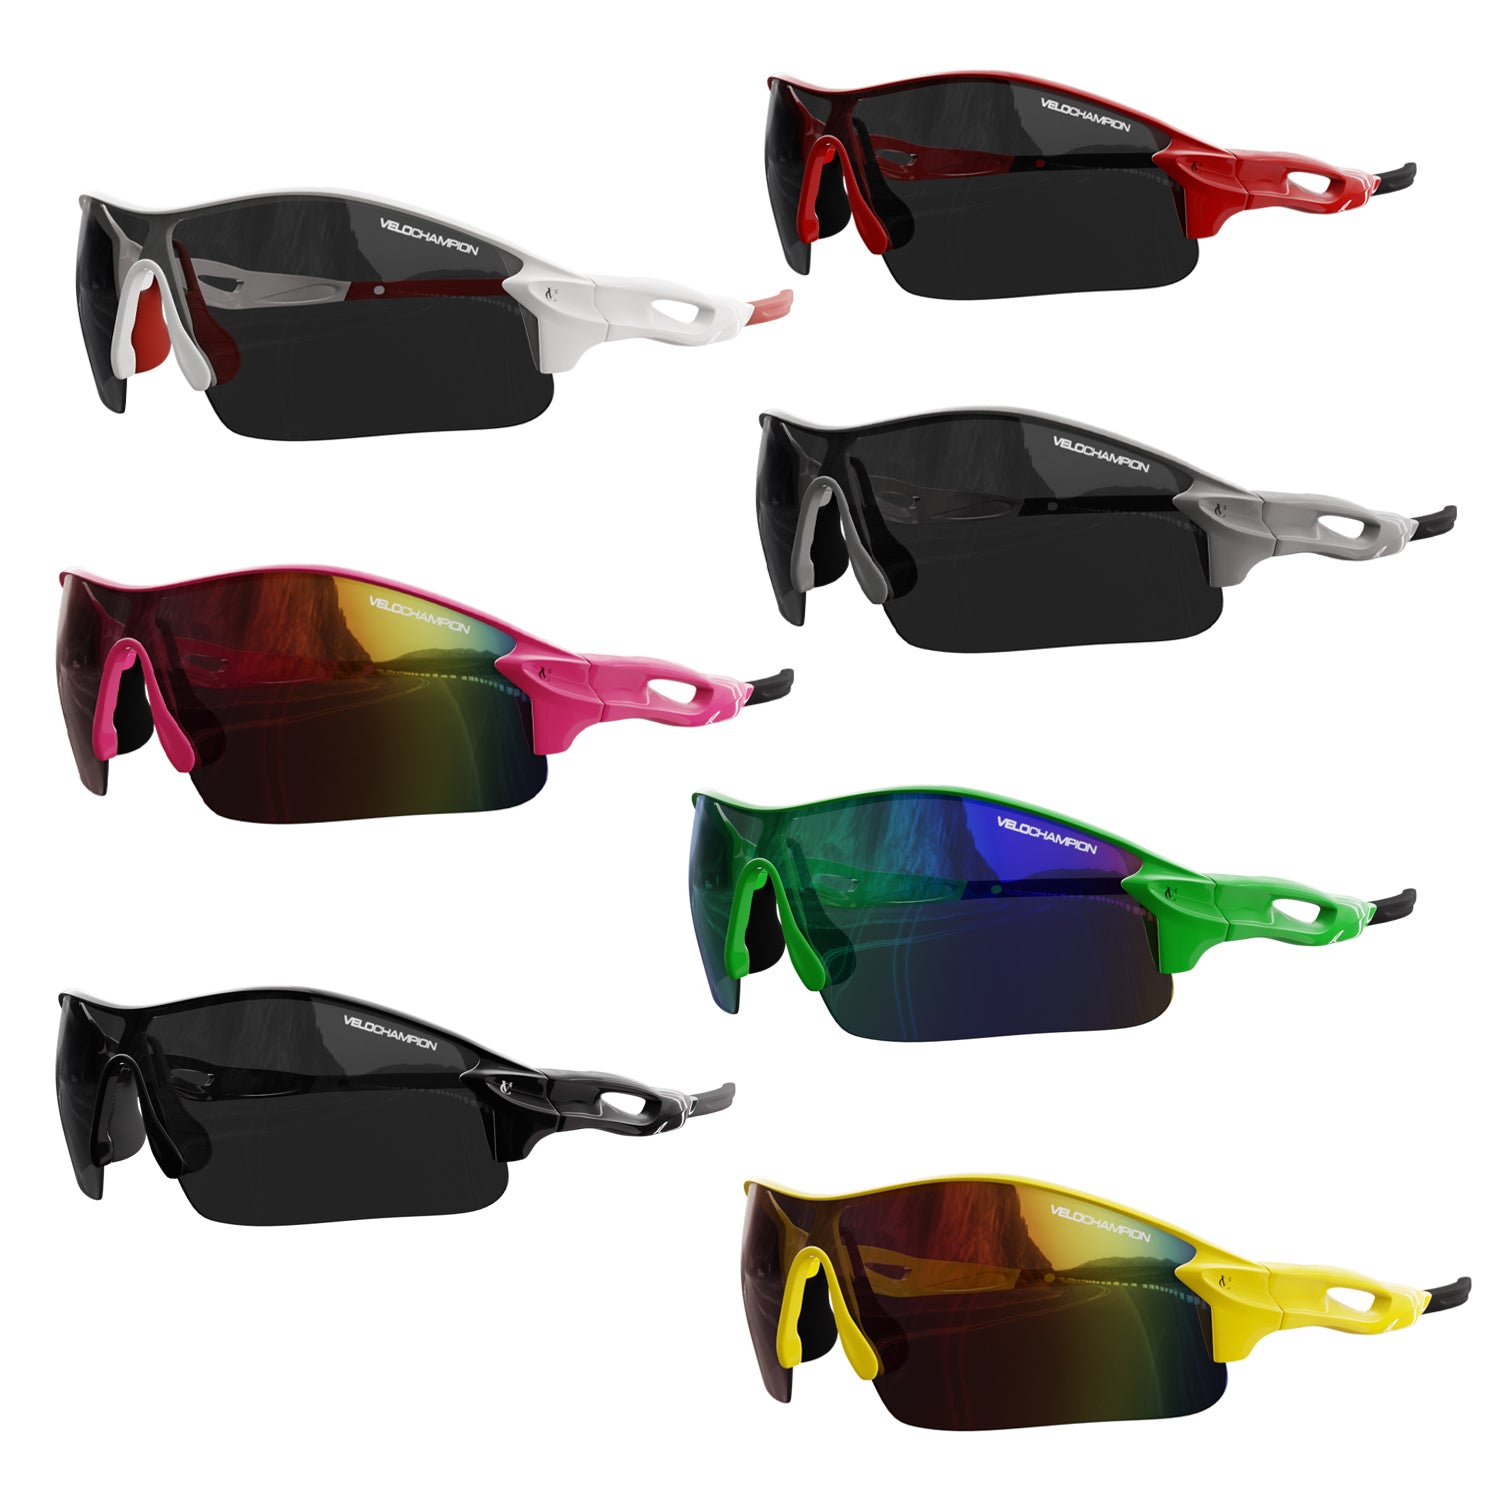 Vortex Cycling Sunglasses Bundle (Frame, 2 Lenses & Case)